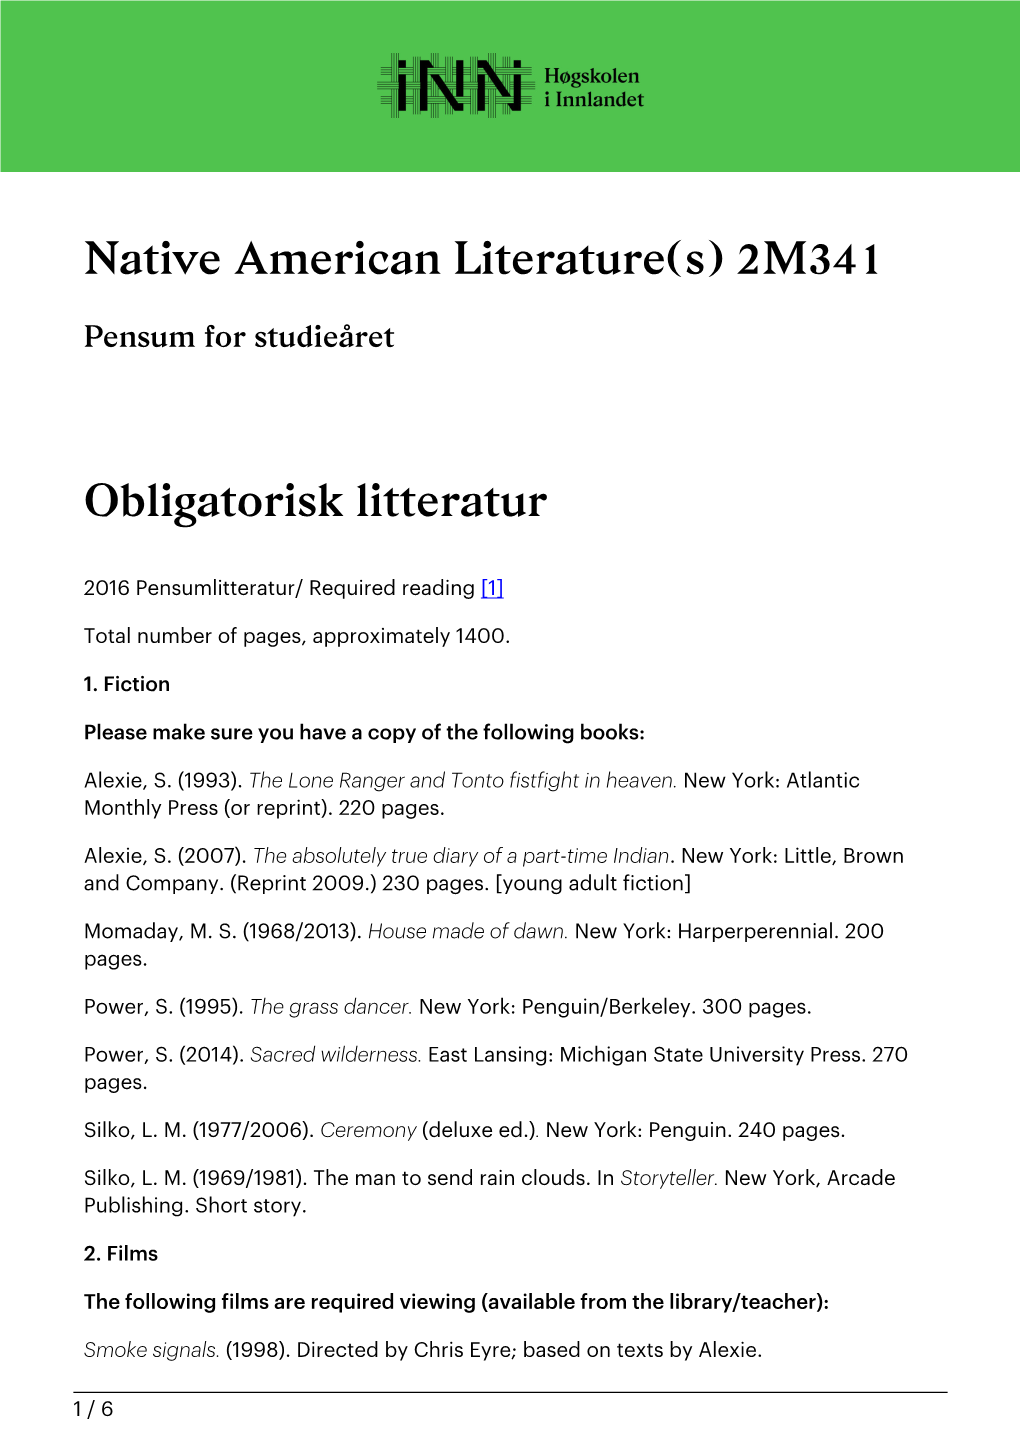 Native American Literature(S) 2M341 Obligatorisk Litteratur